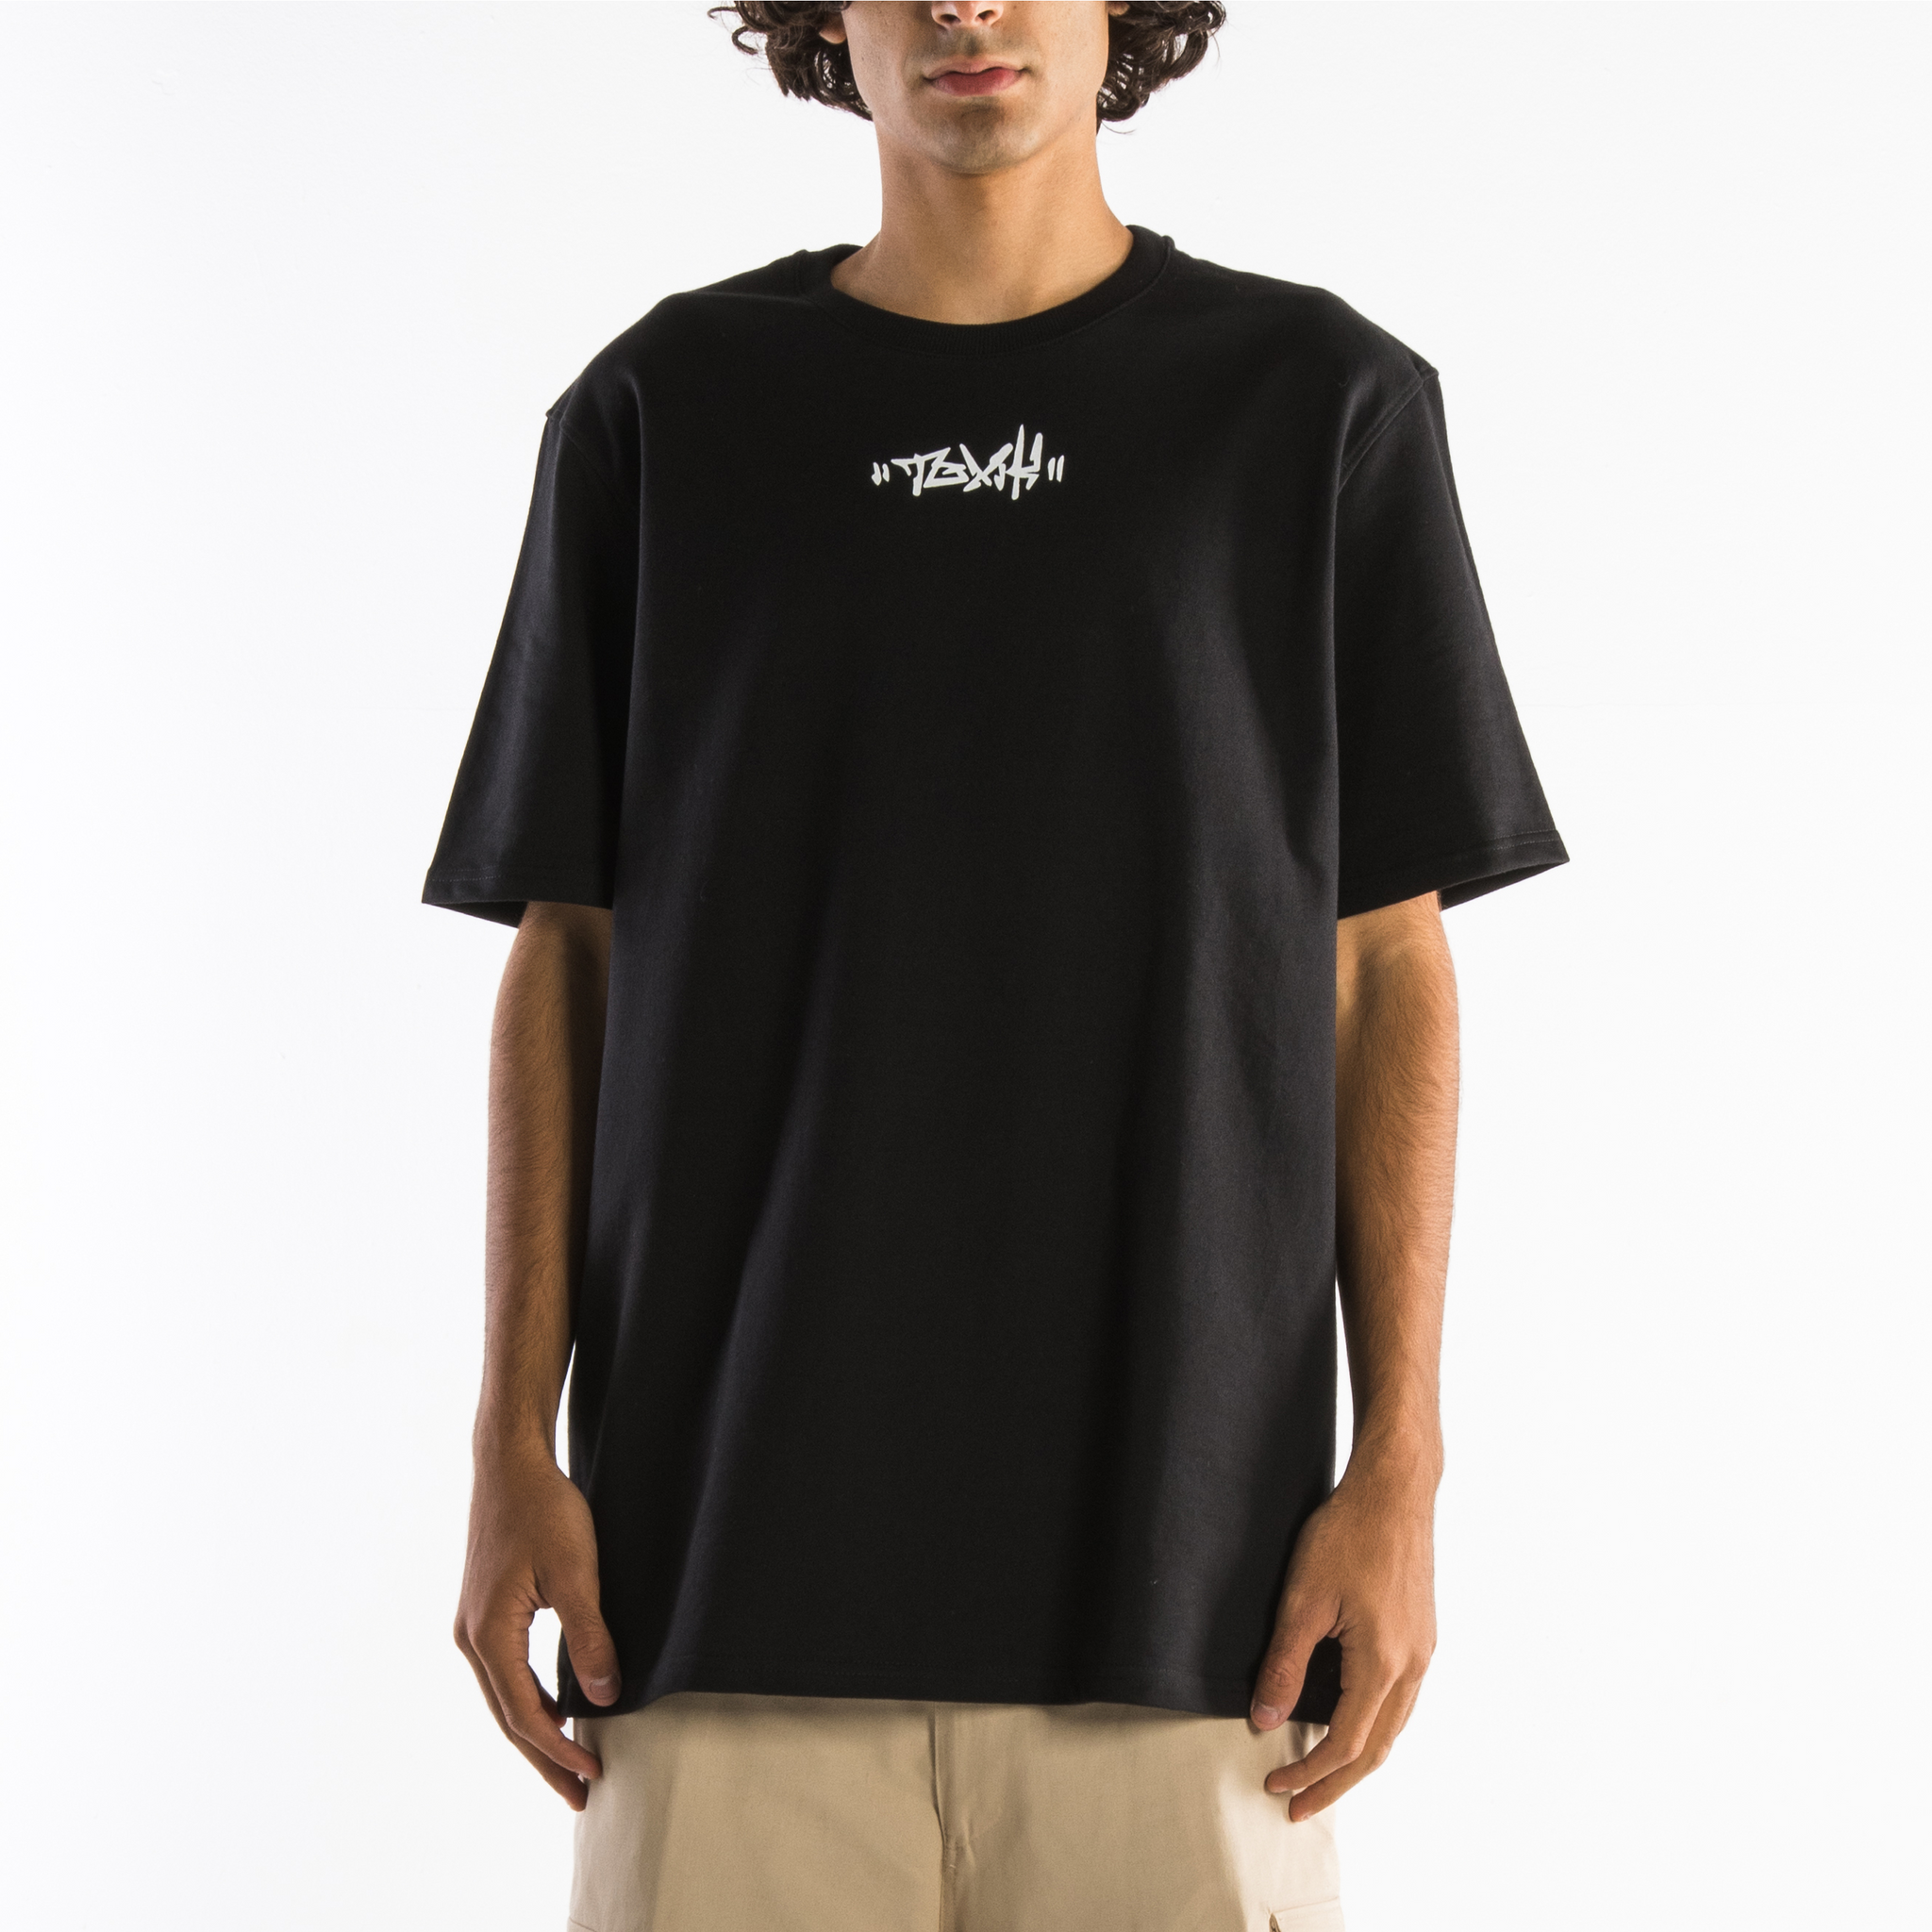 TOXIK "Vandal" Black T-Shirt